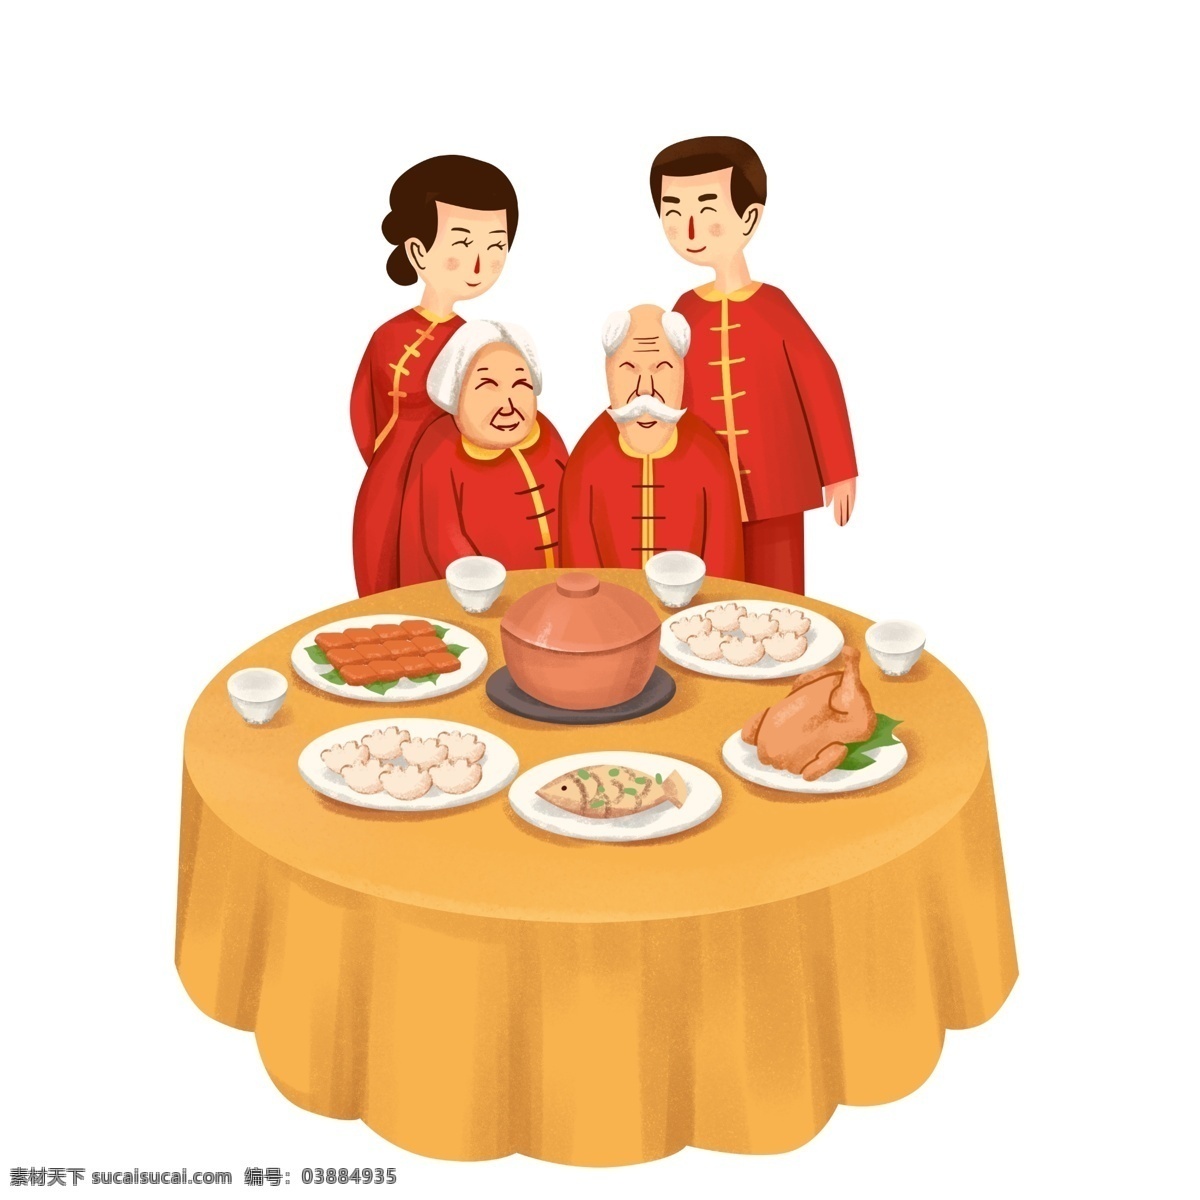 全家 一起 吃 团圆饭 新年 快乐 红色 金黄 新年快乐 餐桌 饺子 2019年 猪年大吉 鸡鱼 喜气洋洋 男人女人 爷爷奶奶